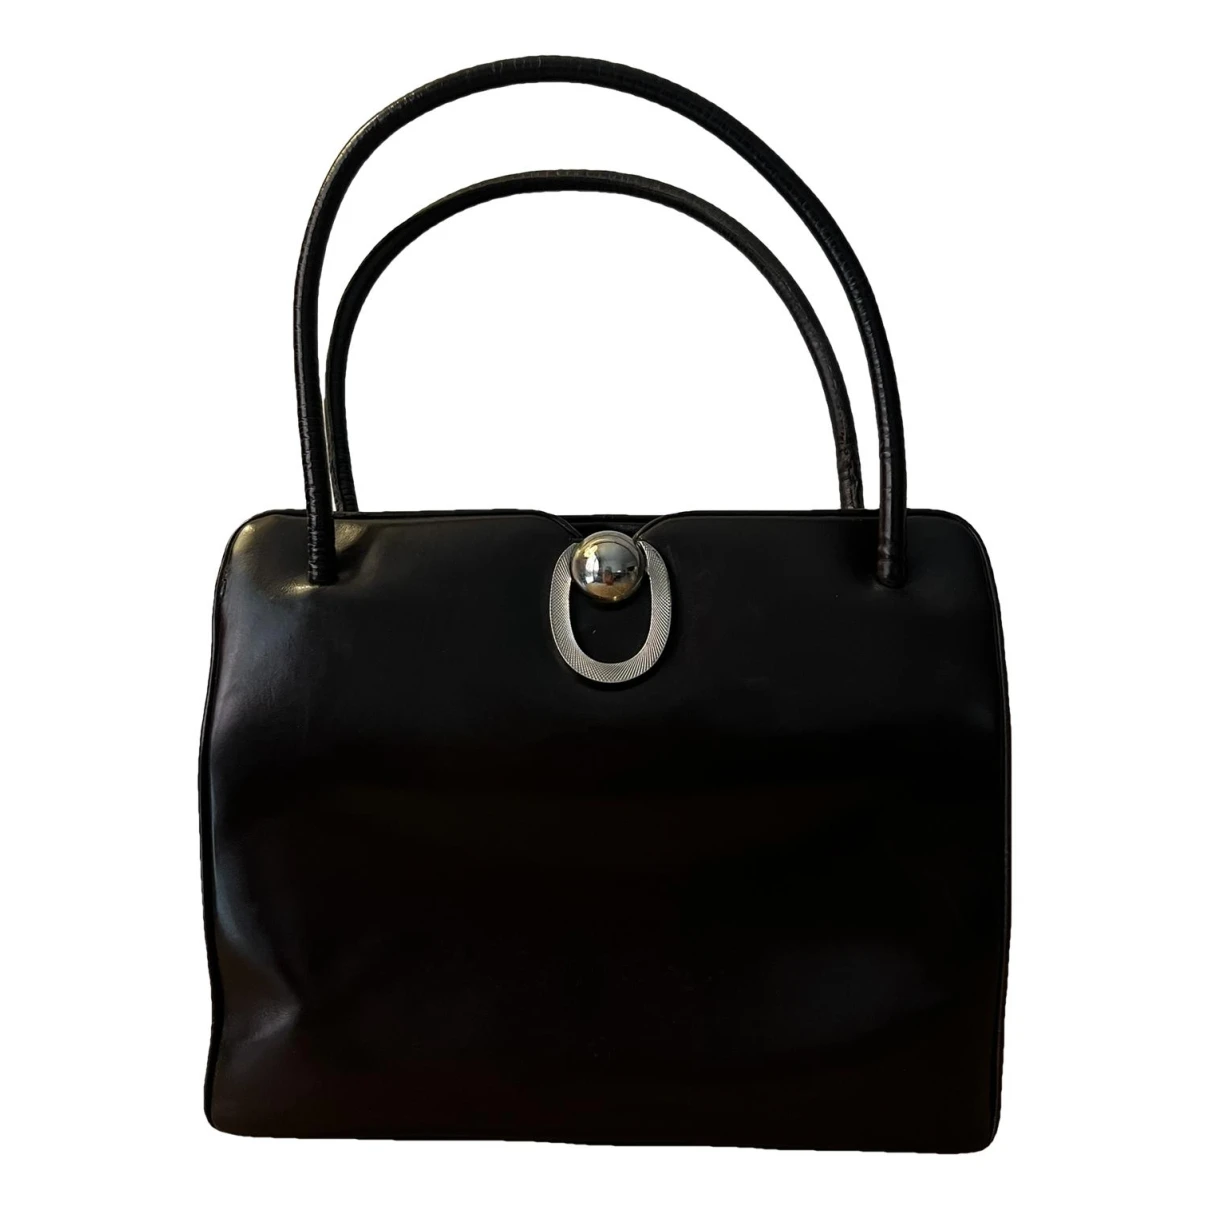 Pre-owned Loewe Leather Handbag In Brown